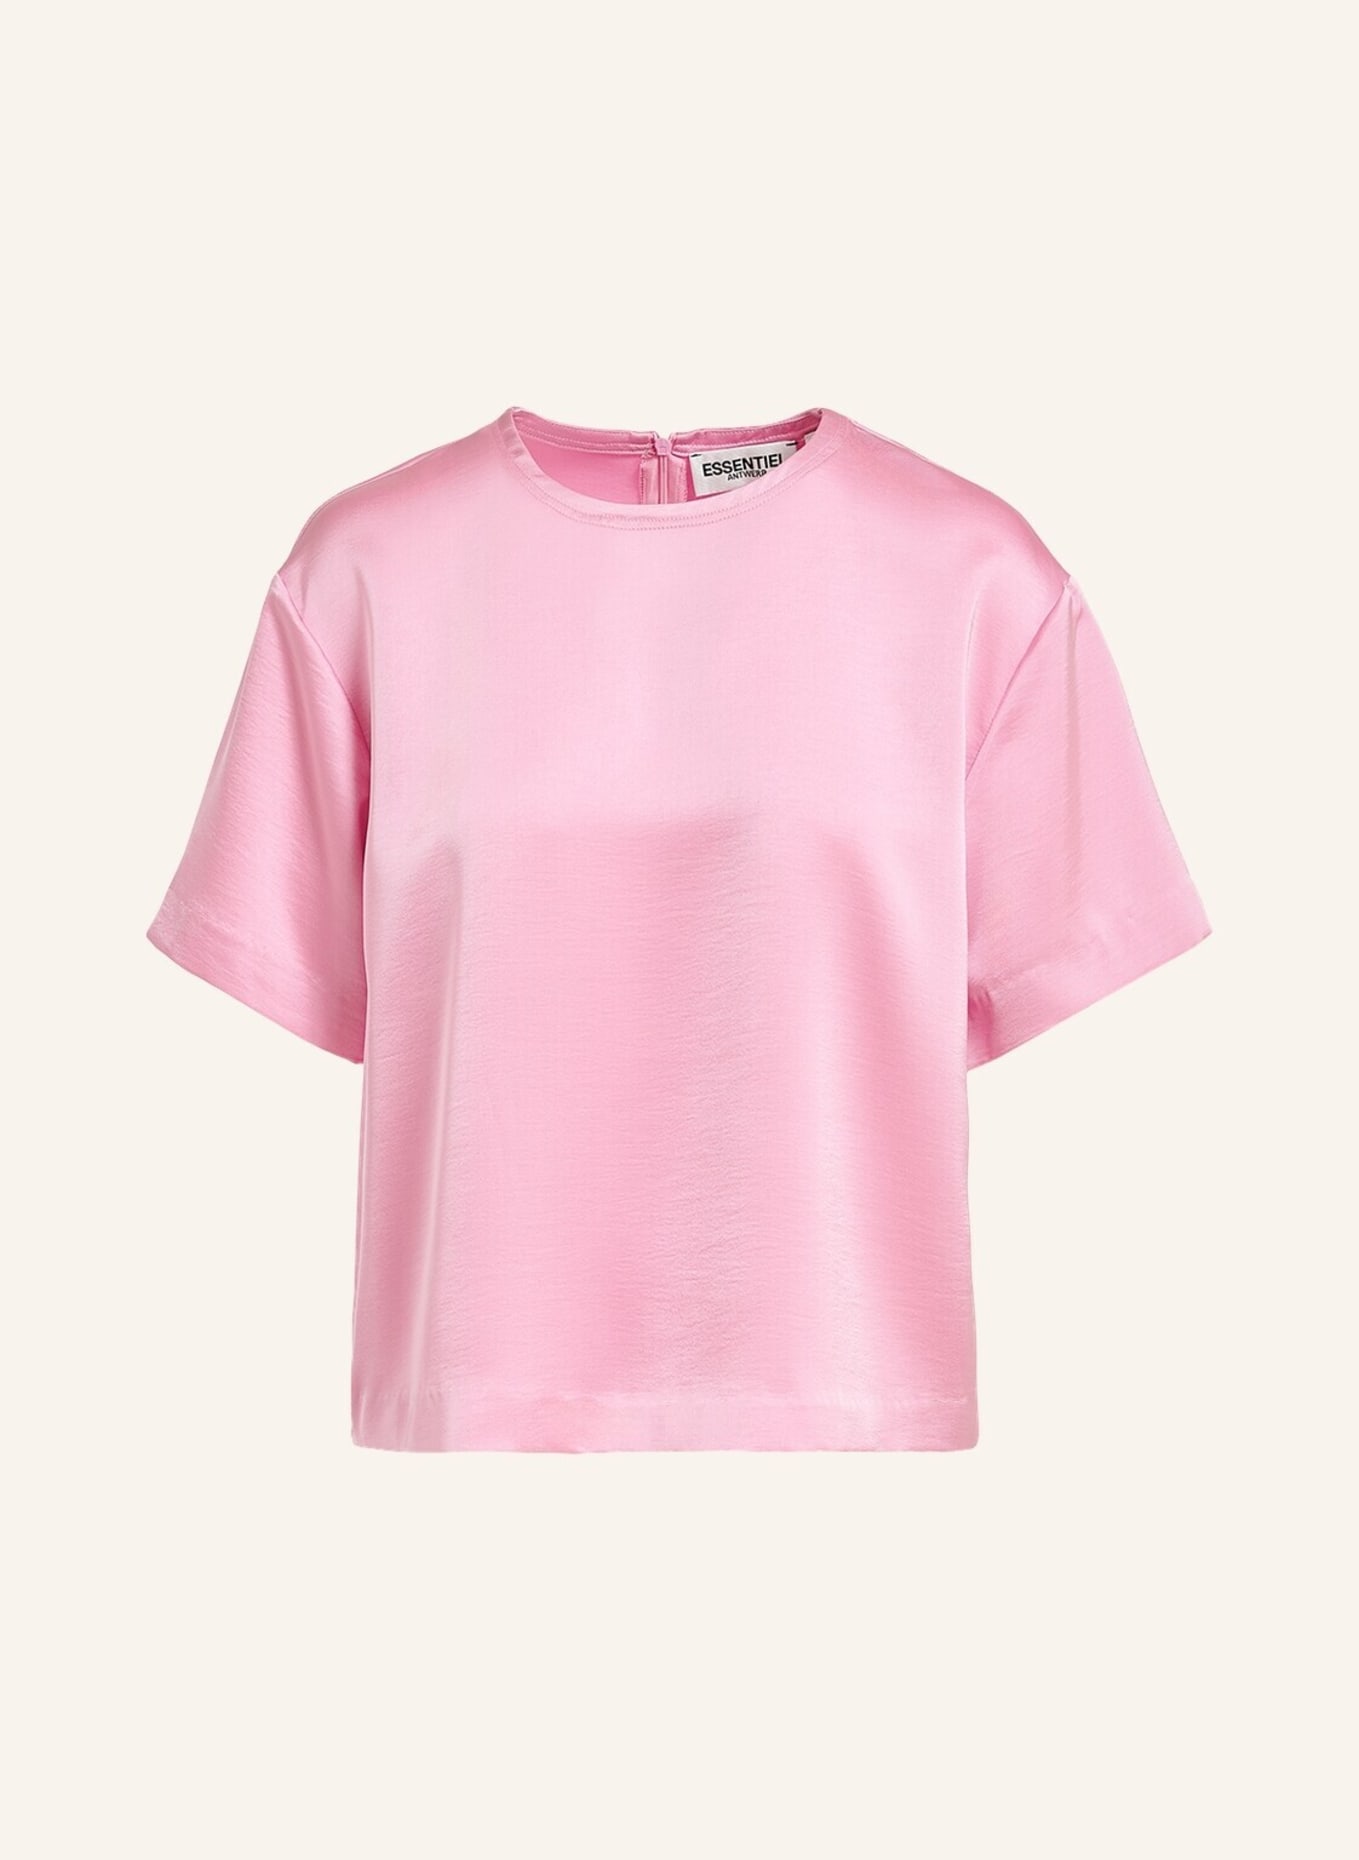 ESSENTIEL ANTWERP T-Shirt FENNEL, Farbe: ROSA (Bild 1)